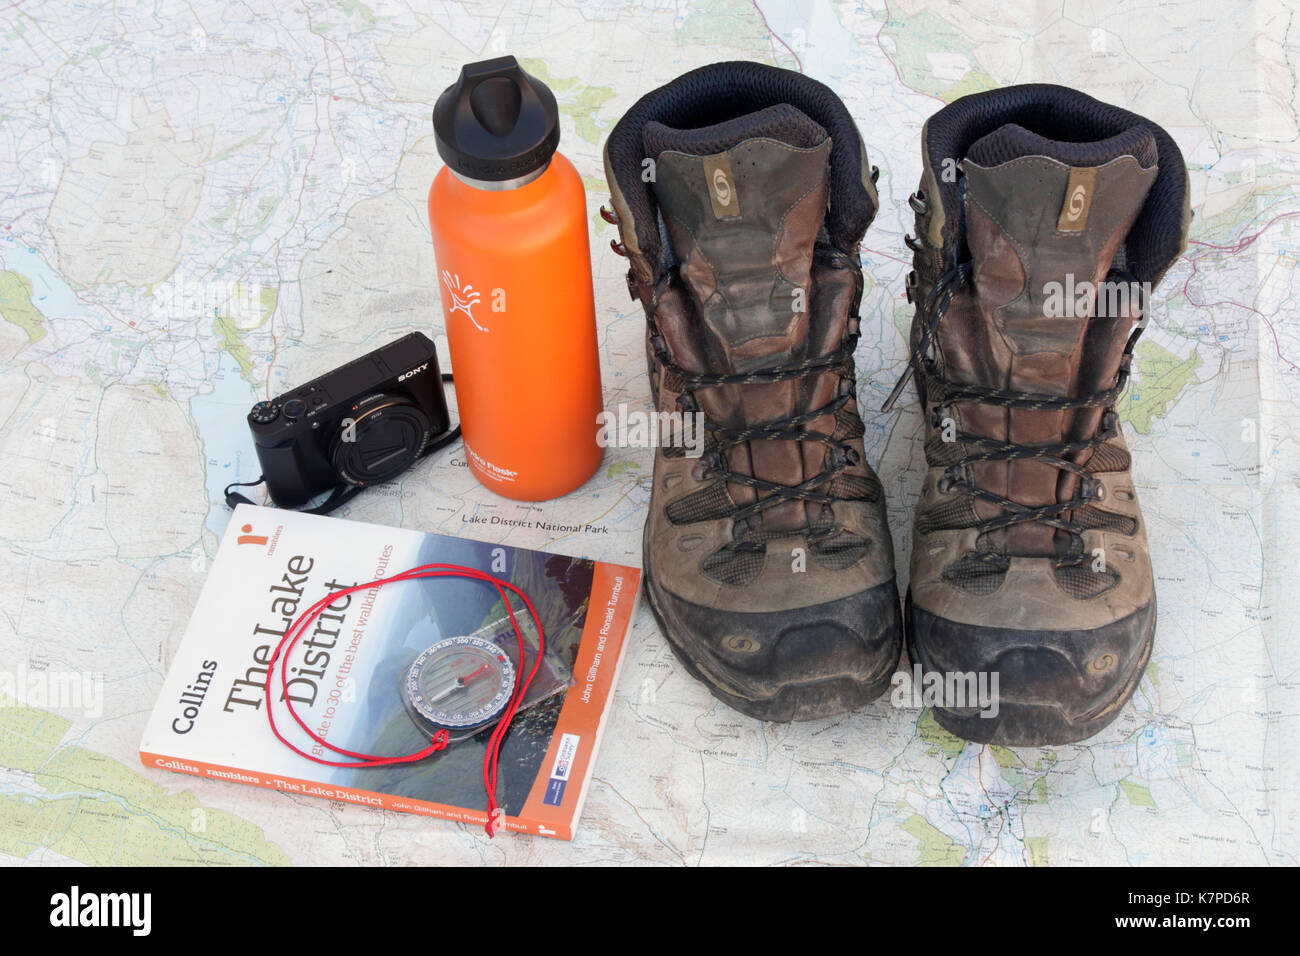 Vorbereitung für einen Wanderurlaub im Lake District. Wanderschuhe, wasser Kolben, Kamera, Ratgeber und Kompass auf einer Ordnance Survey Karte der Gegend Stockfoto